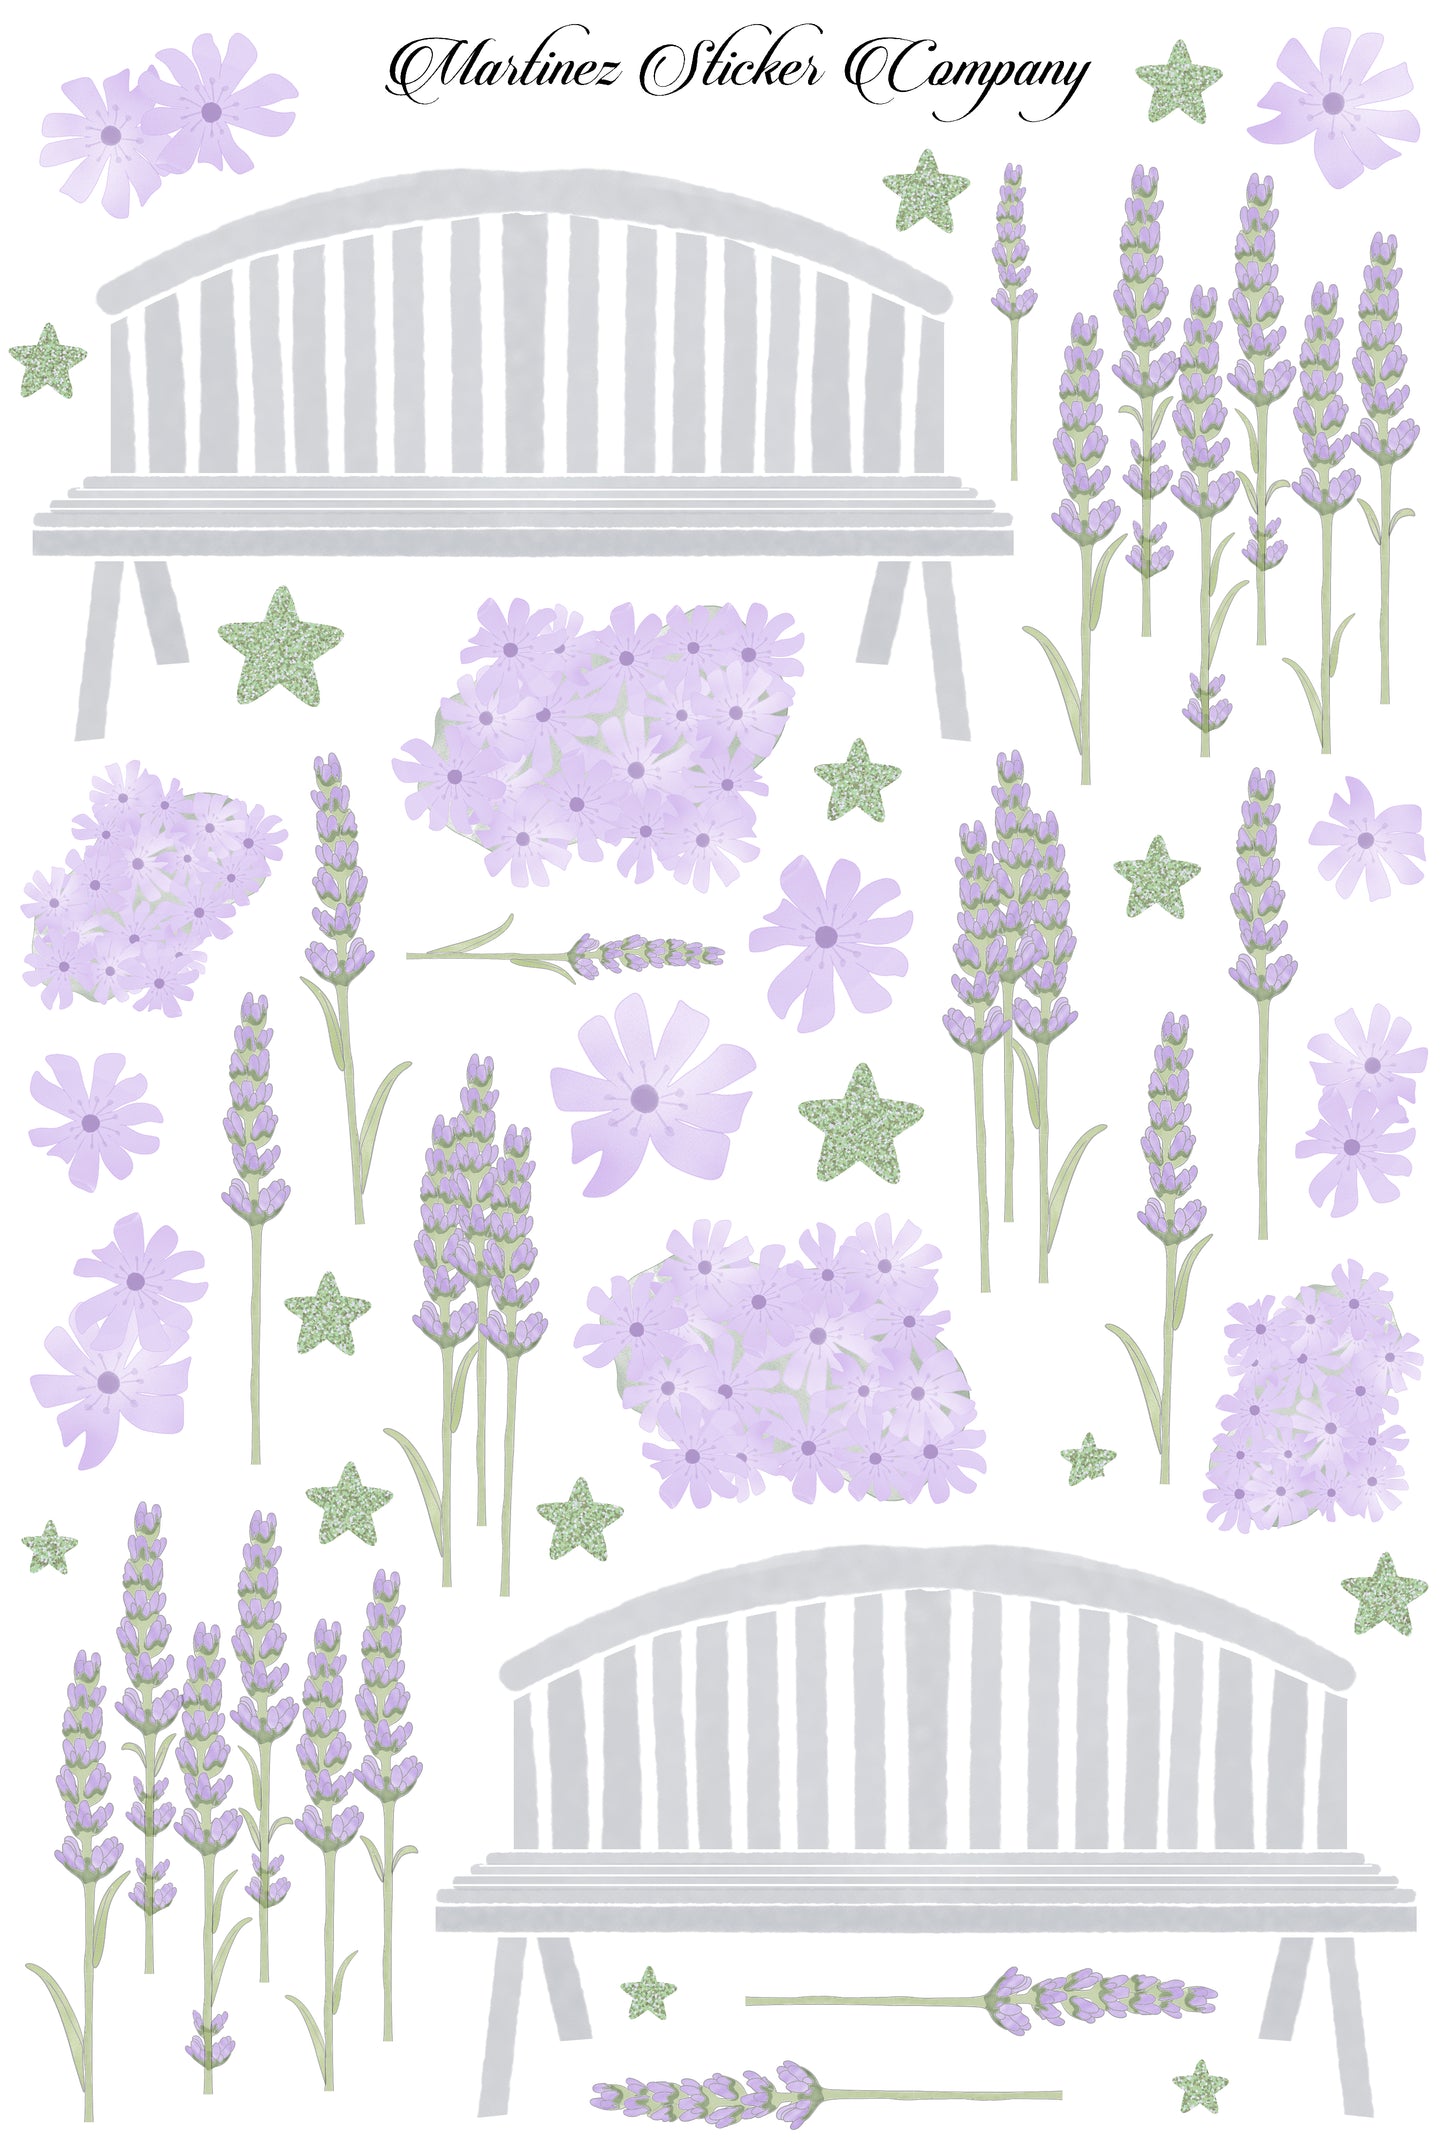 Lavender Bliss